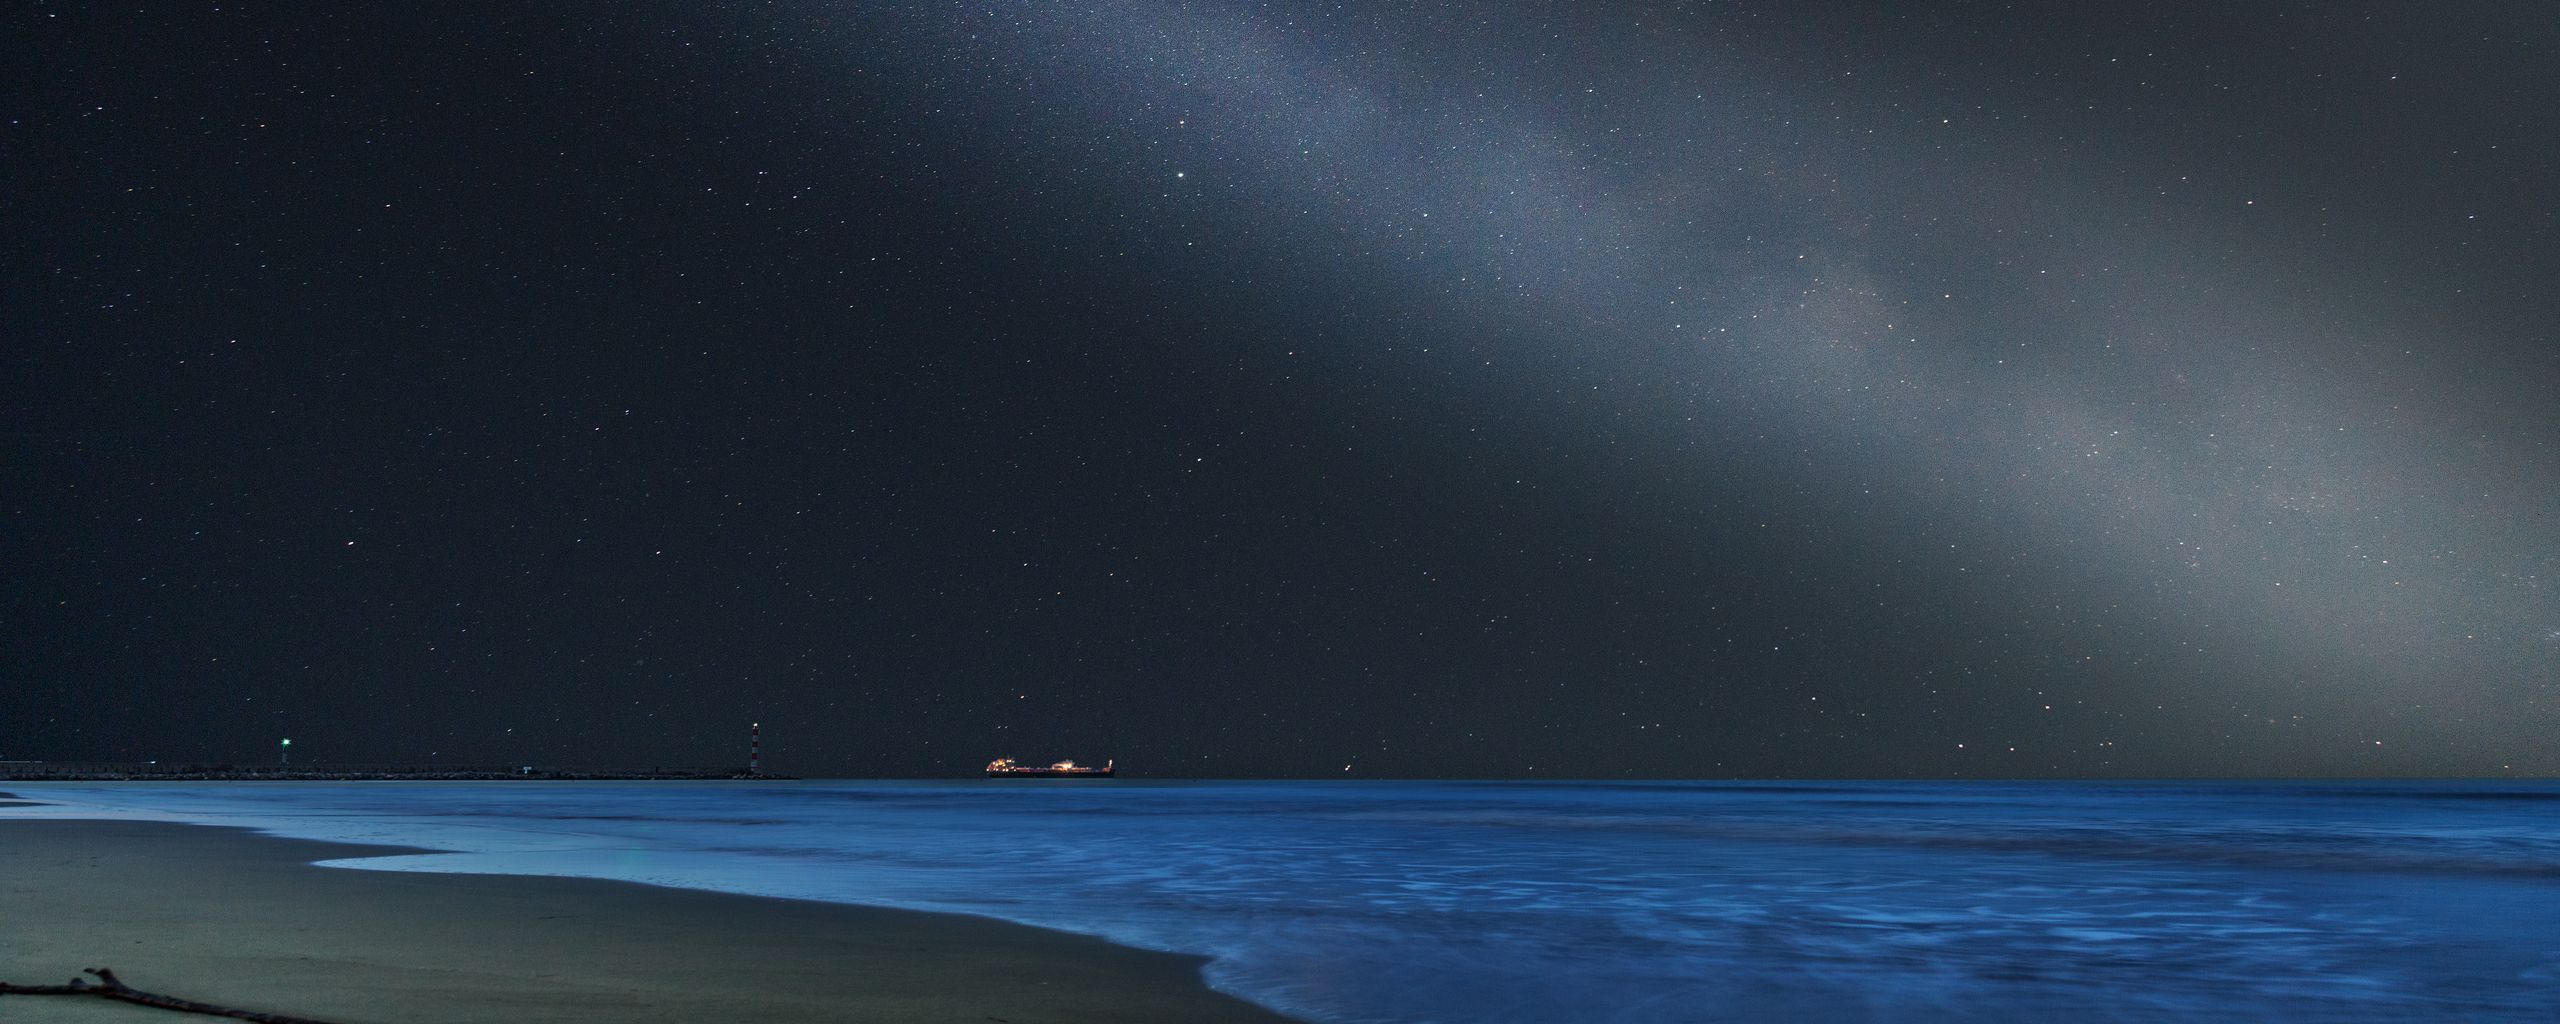 Nếu bạn muốn tìm kiếm một hình nền đẹp của bãi biển trong đêm hoặc bầu trời với hàng ngàn ngôi sao, hãy tải ngay hình nền này! Được thiết kế với độ phân giải đen 2560x1024, chắc chắn sẽ mang đến cho bạn một không gian làm việc hoàn hảo.